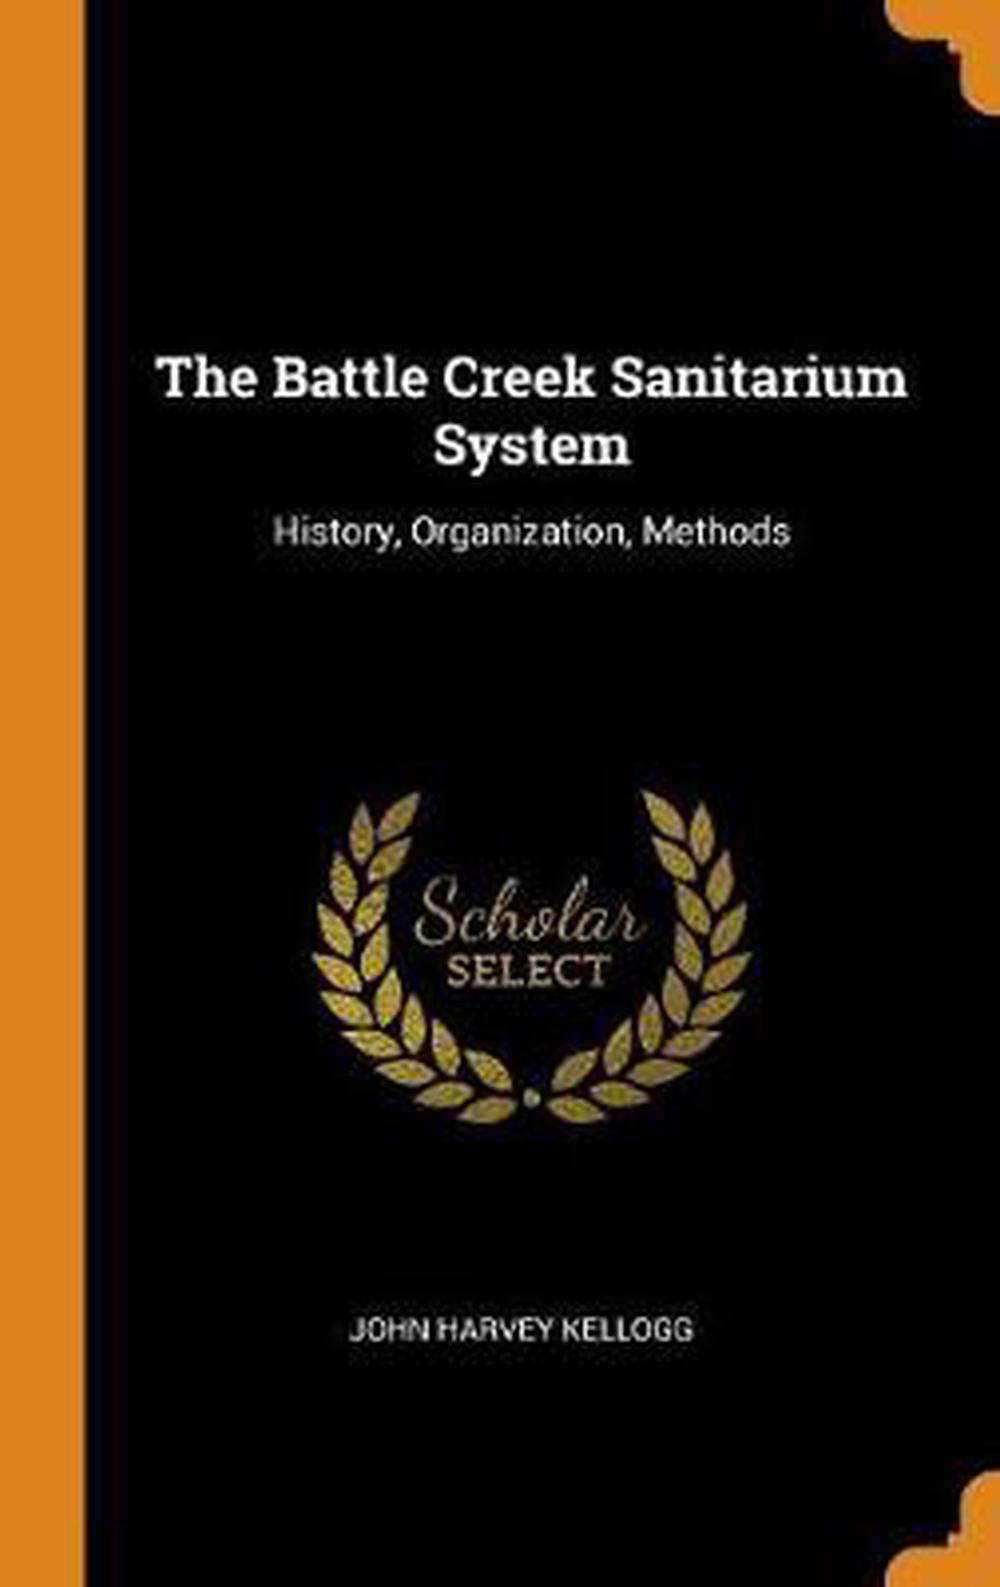 the sanitarium book